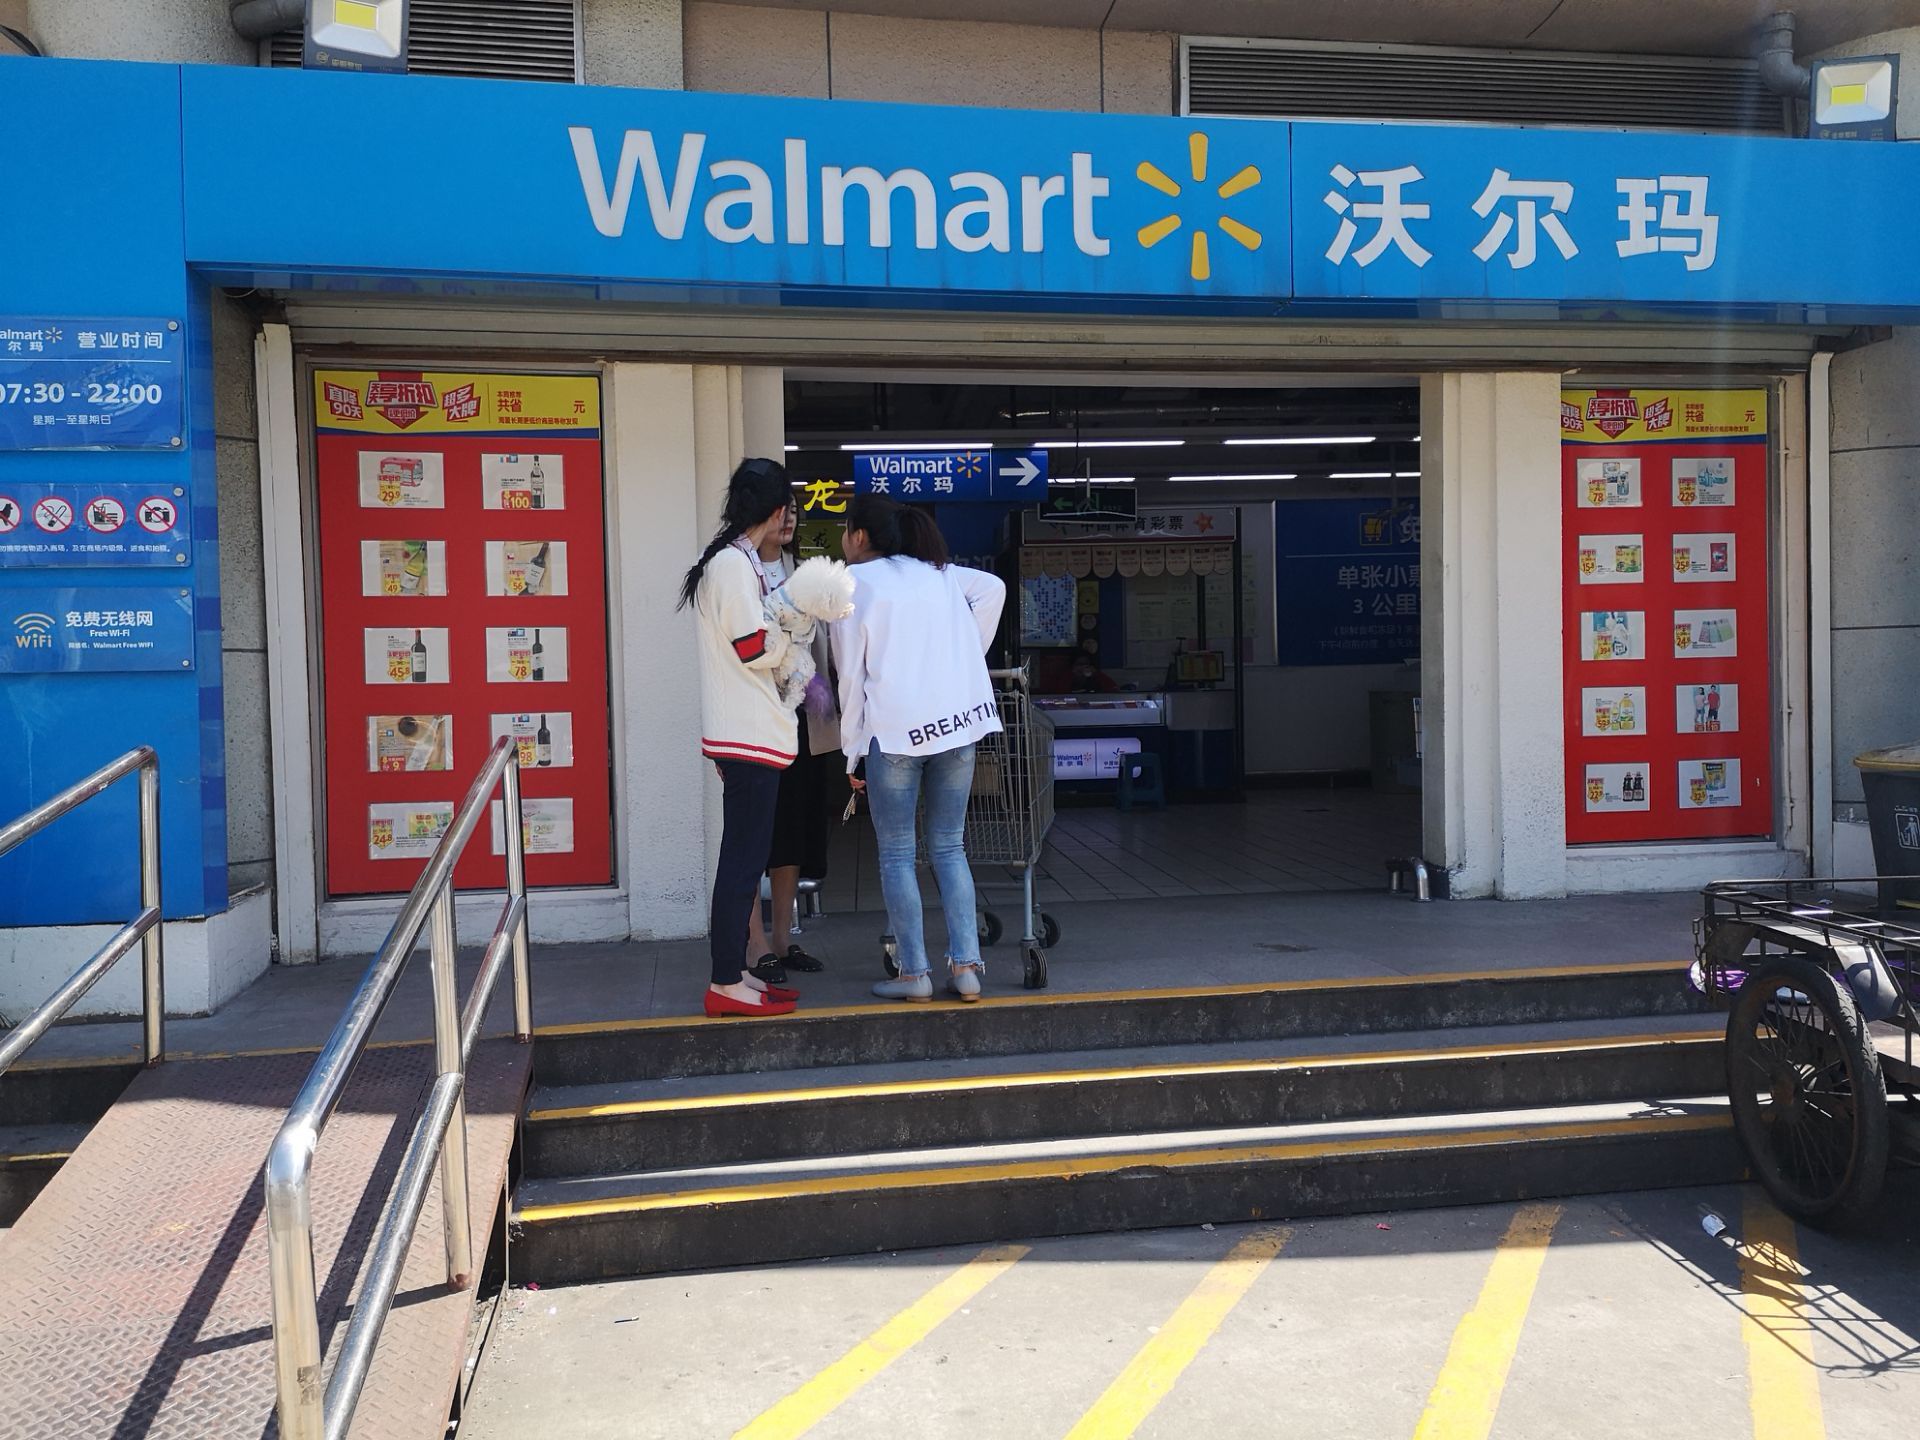 沃尔玛超市,位于杭州黄龙体育中心,开业时名为好又多超市,至今已有